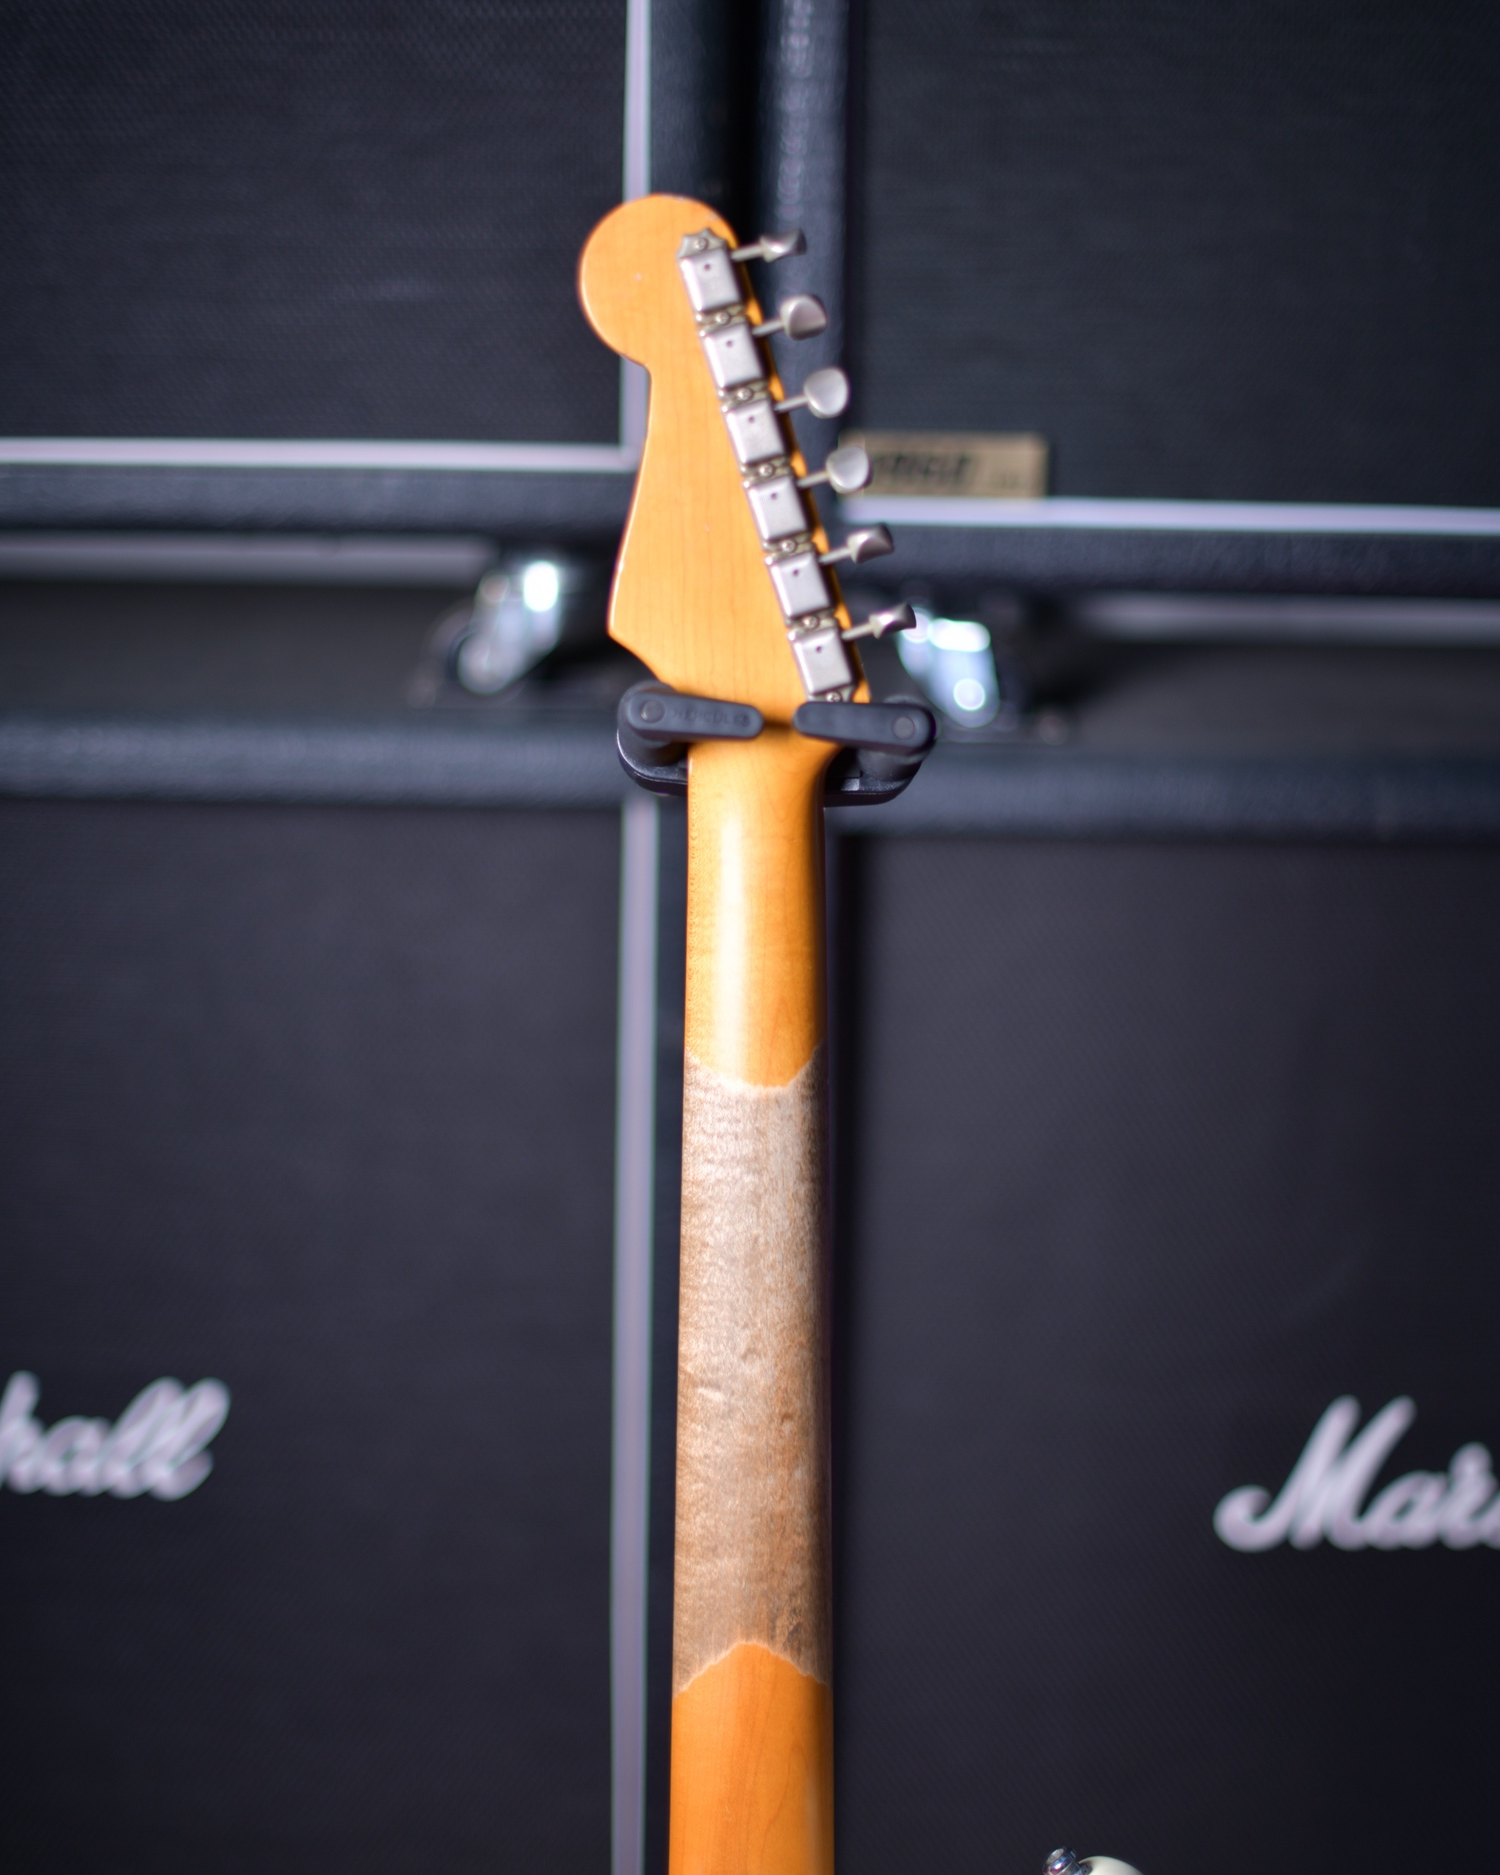 Fender Japan Olympic White over Sunburst Stratocaster Heavy Relic 1992